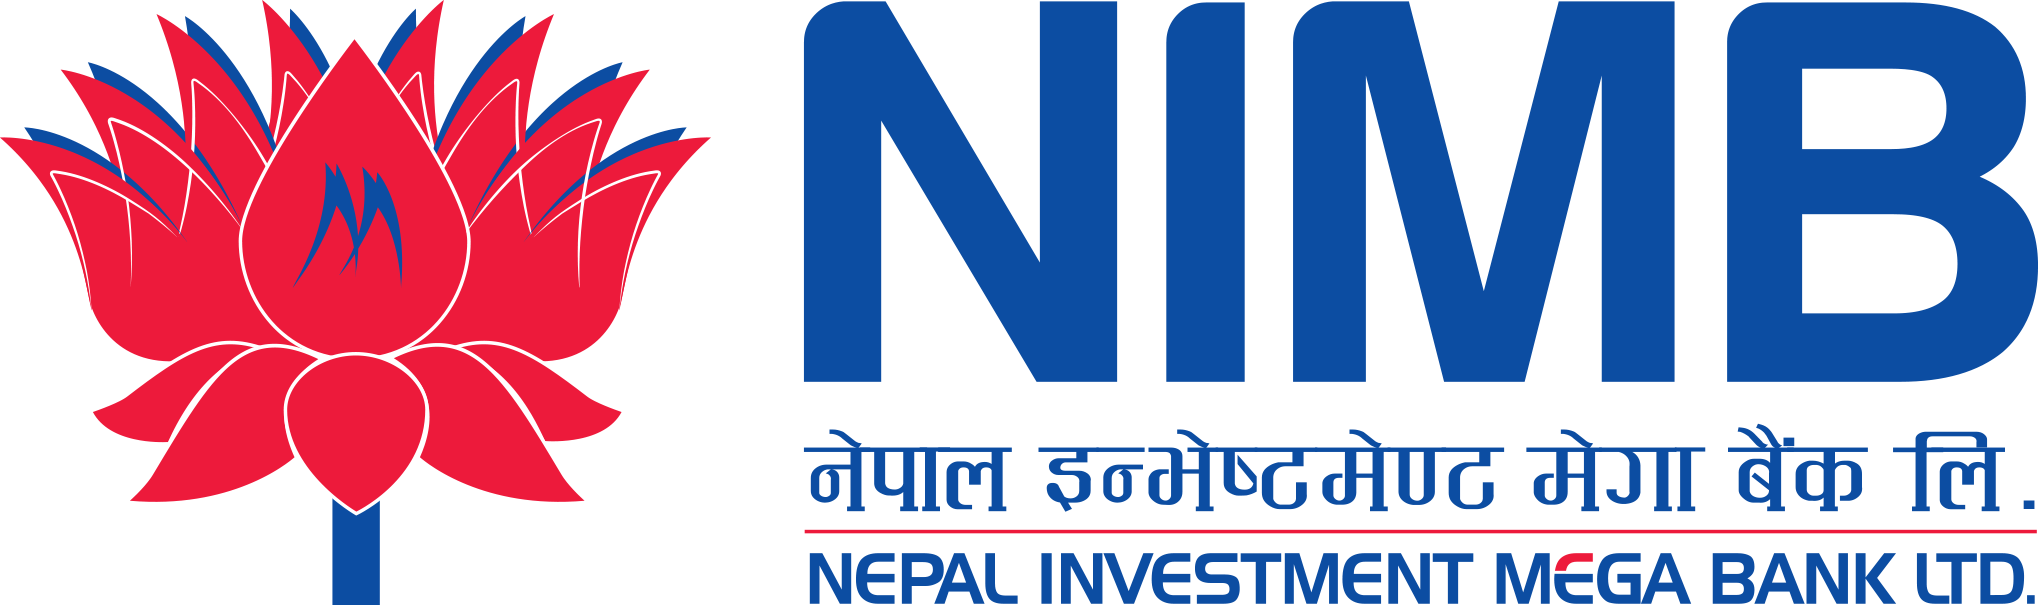 आजदेखि नेपाल इन्भेष्टमेण्ट मेगा बैंकको ऋणपत्र निष्काशन तथा बिक्री खुला, कहिलेसम्म दिने आवेदन ?